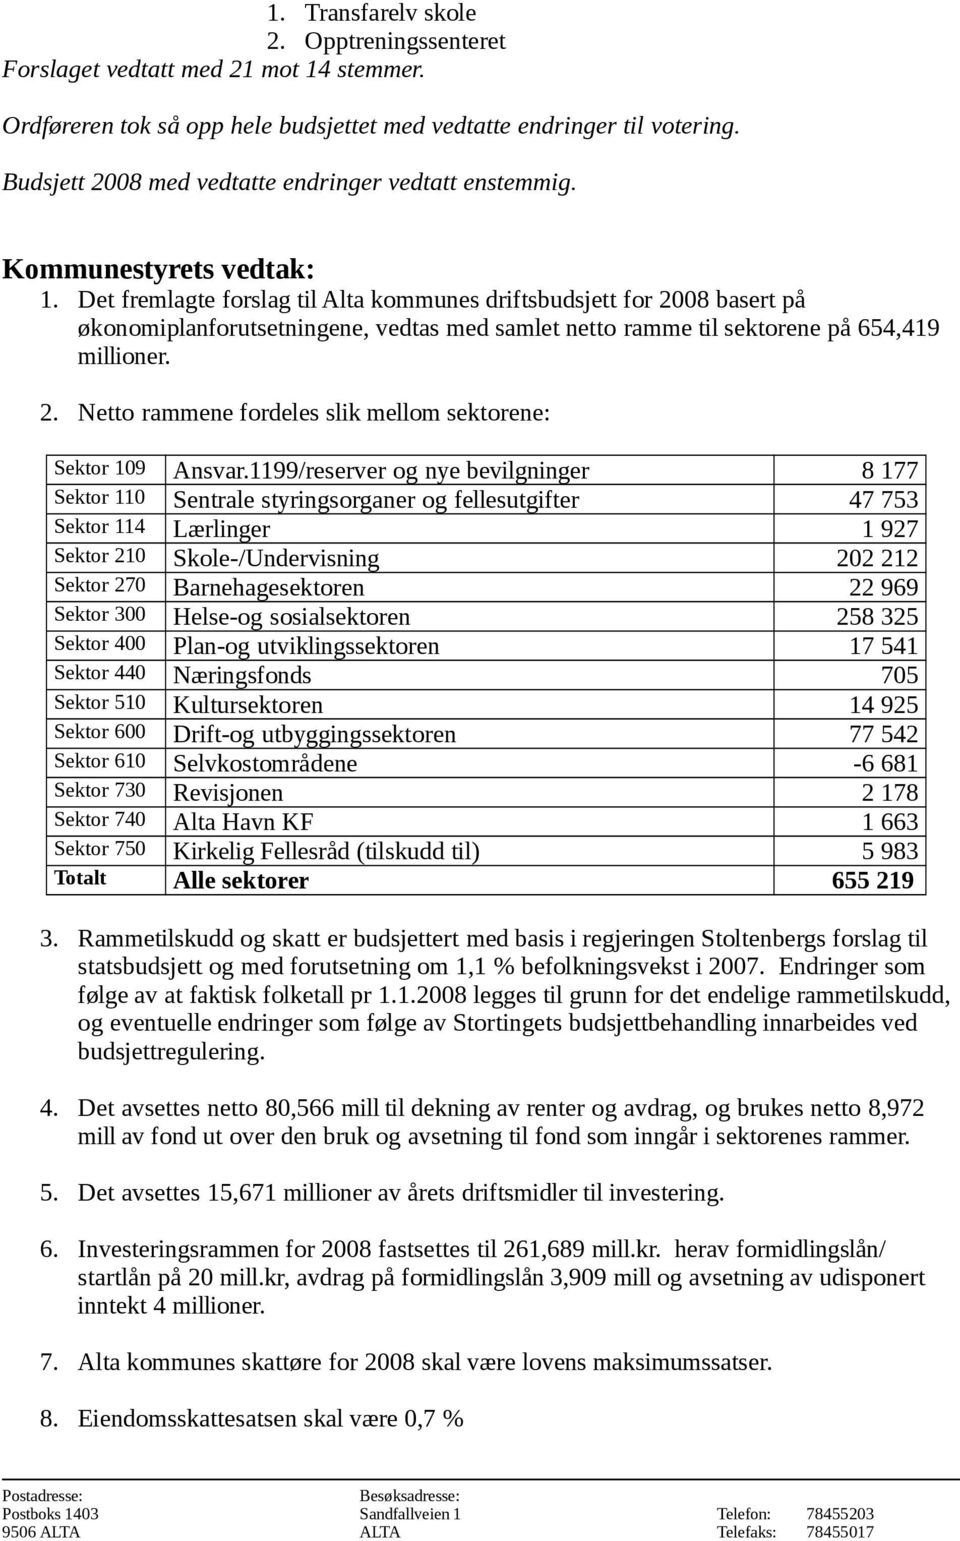 Det fremlagte forslag til Alta kommunes driftsbudsjett for 2008 basert på økonomiplanforutsetningene, vedtas med samlet netto ramme til sektorene på 654,419 millioner. 2. Netto rammene fordeles slik mellom sektorene: Sektor 109 Ansvar.